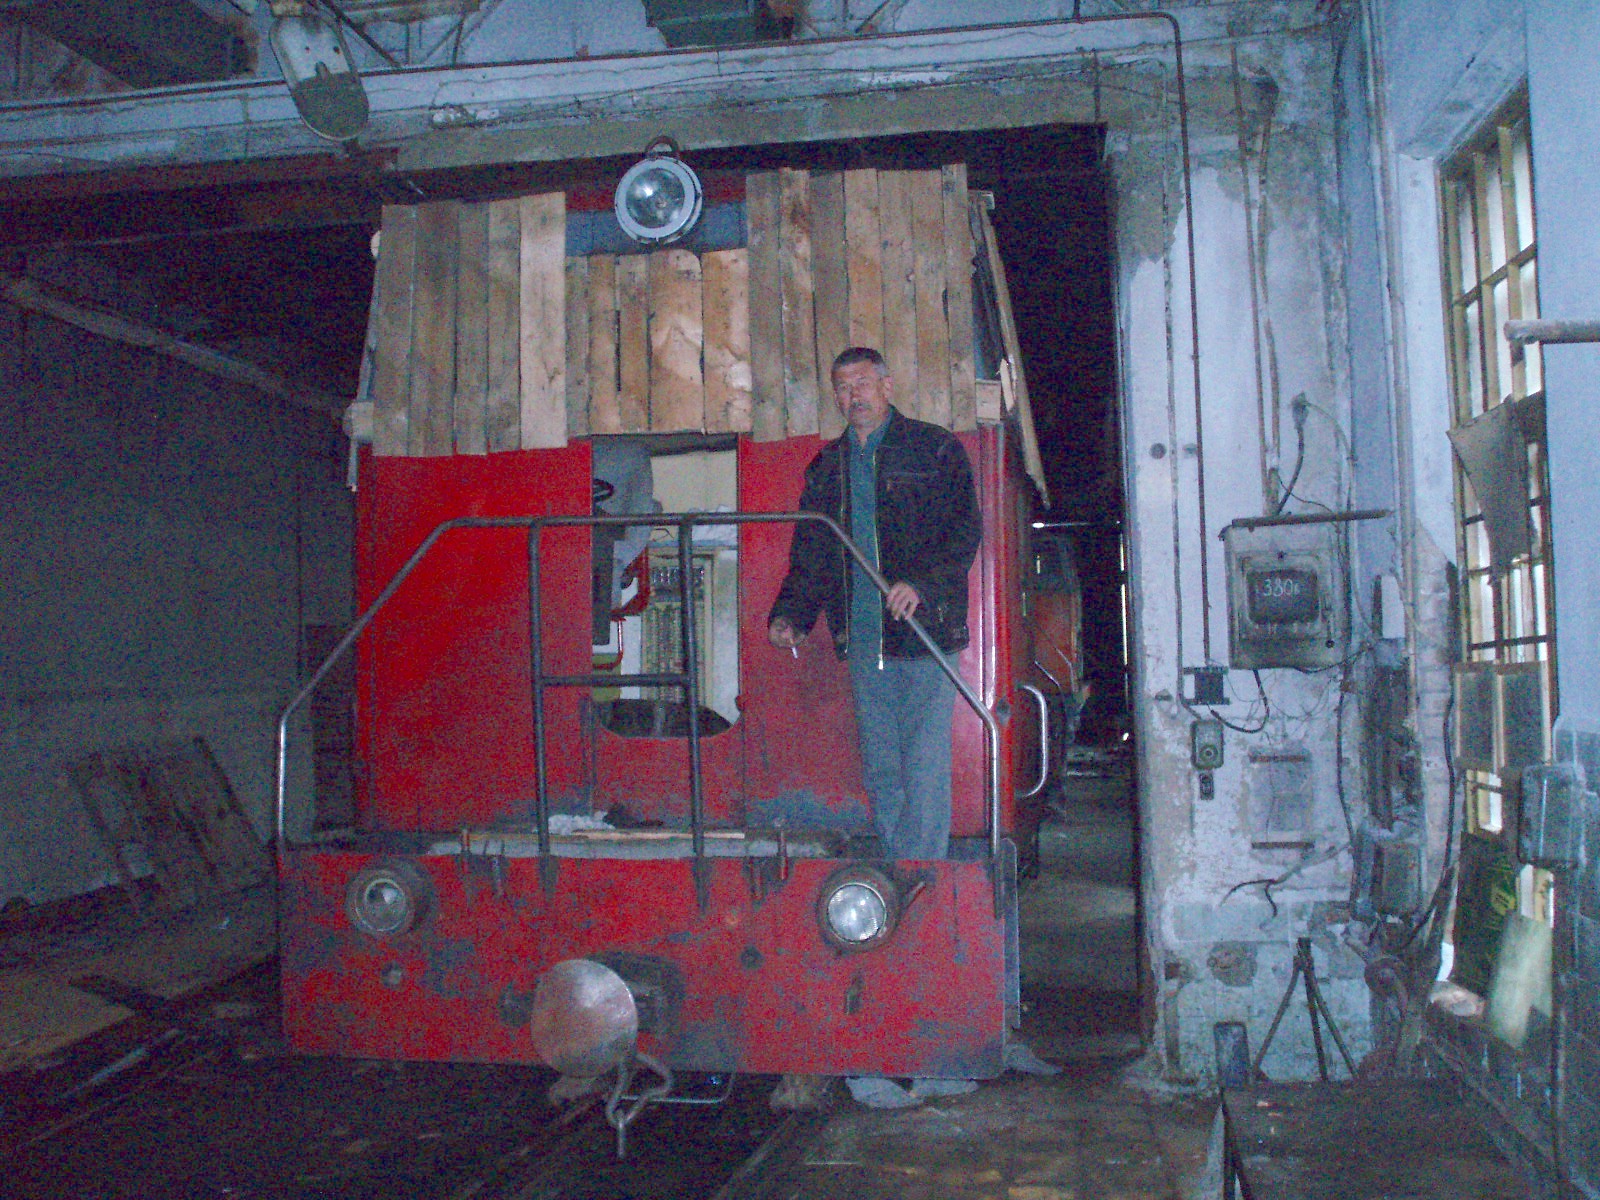 Узкоколейная железная дорога Егорьевского хлопчатобумажного комбината - фотографии, сделанные в 2006 году (часть 3)